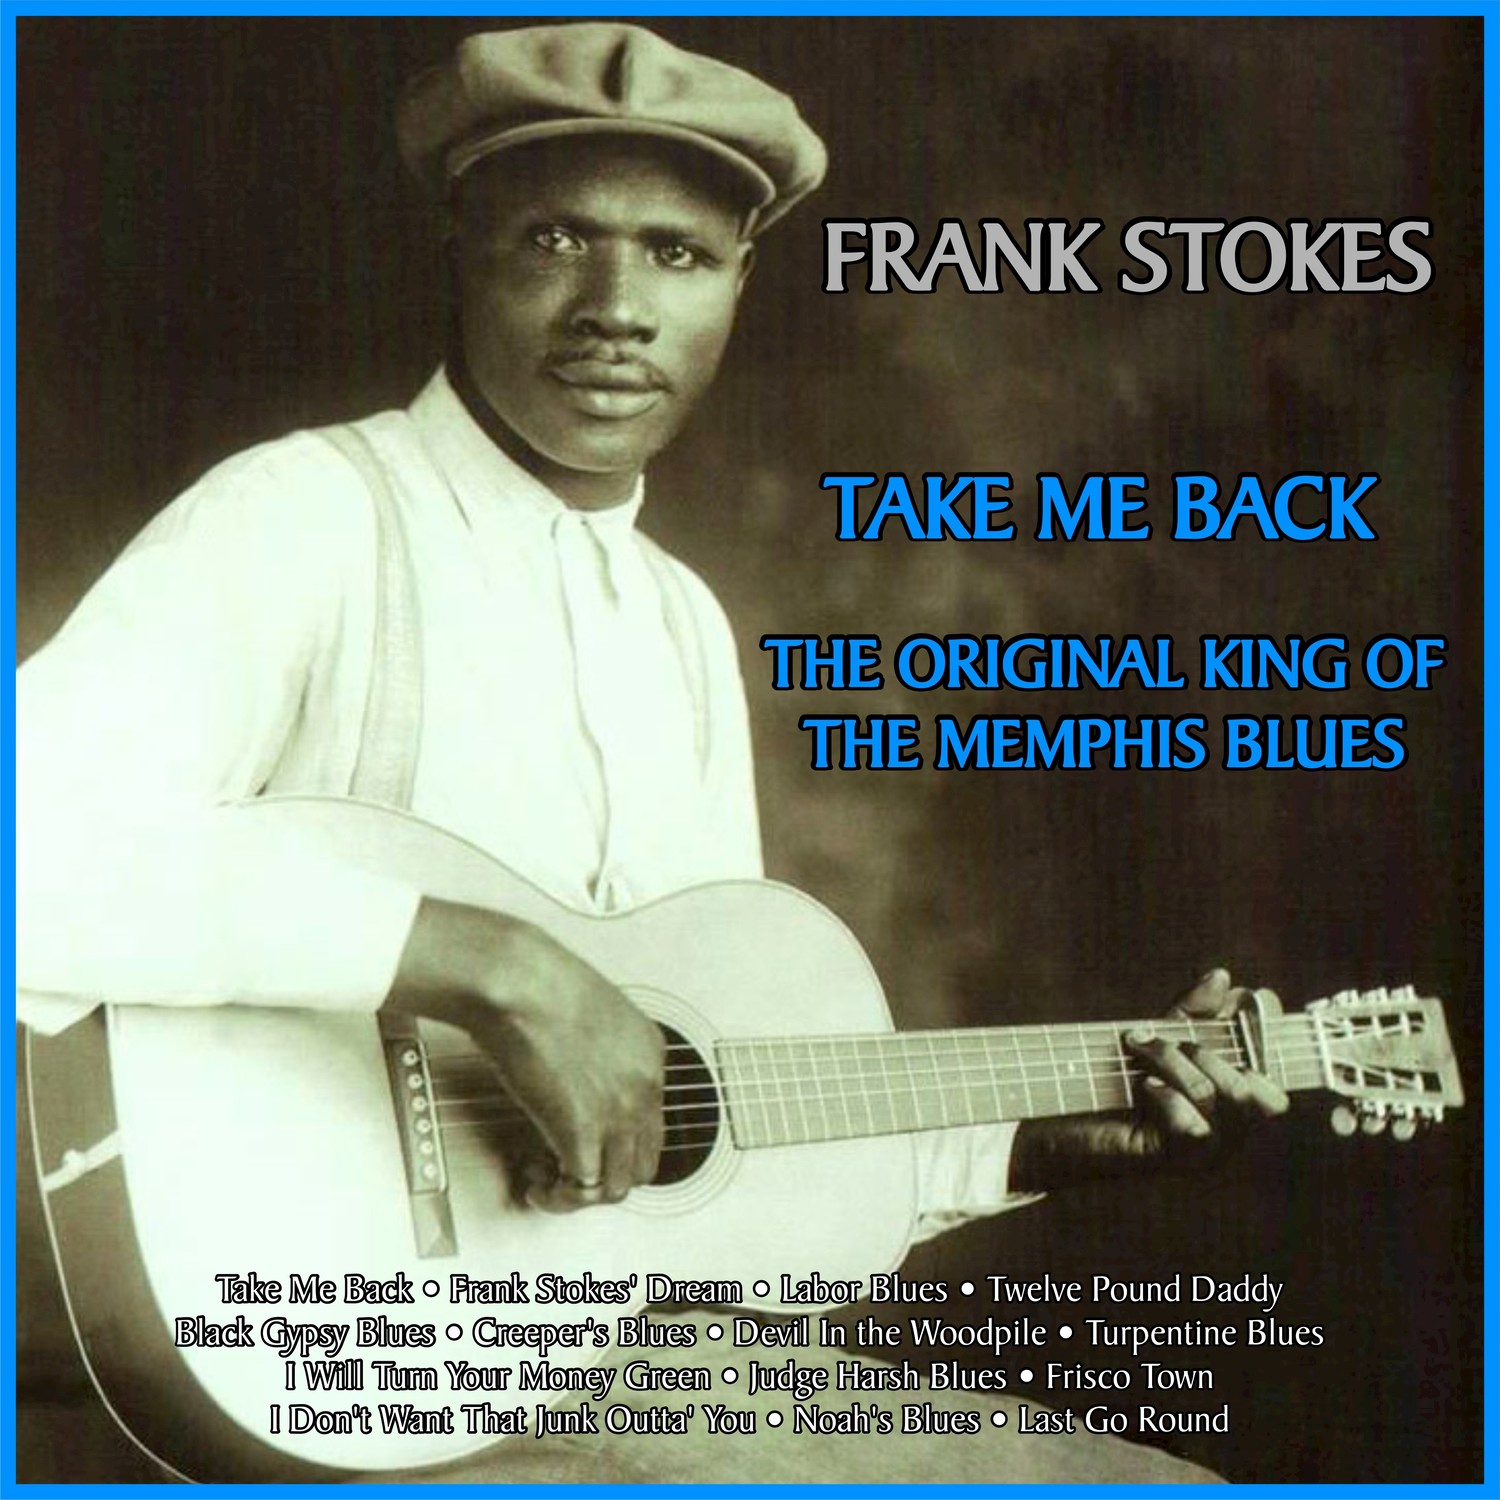 Take Me Back: The Original King of the Memphis Blues